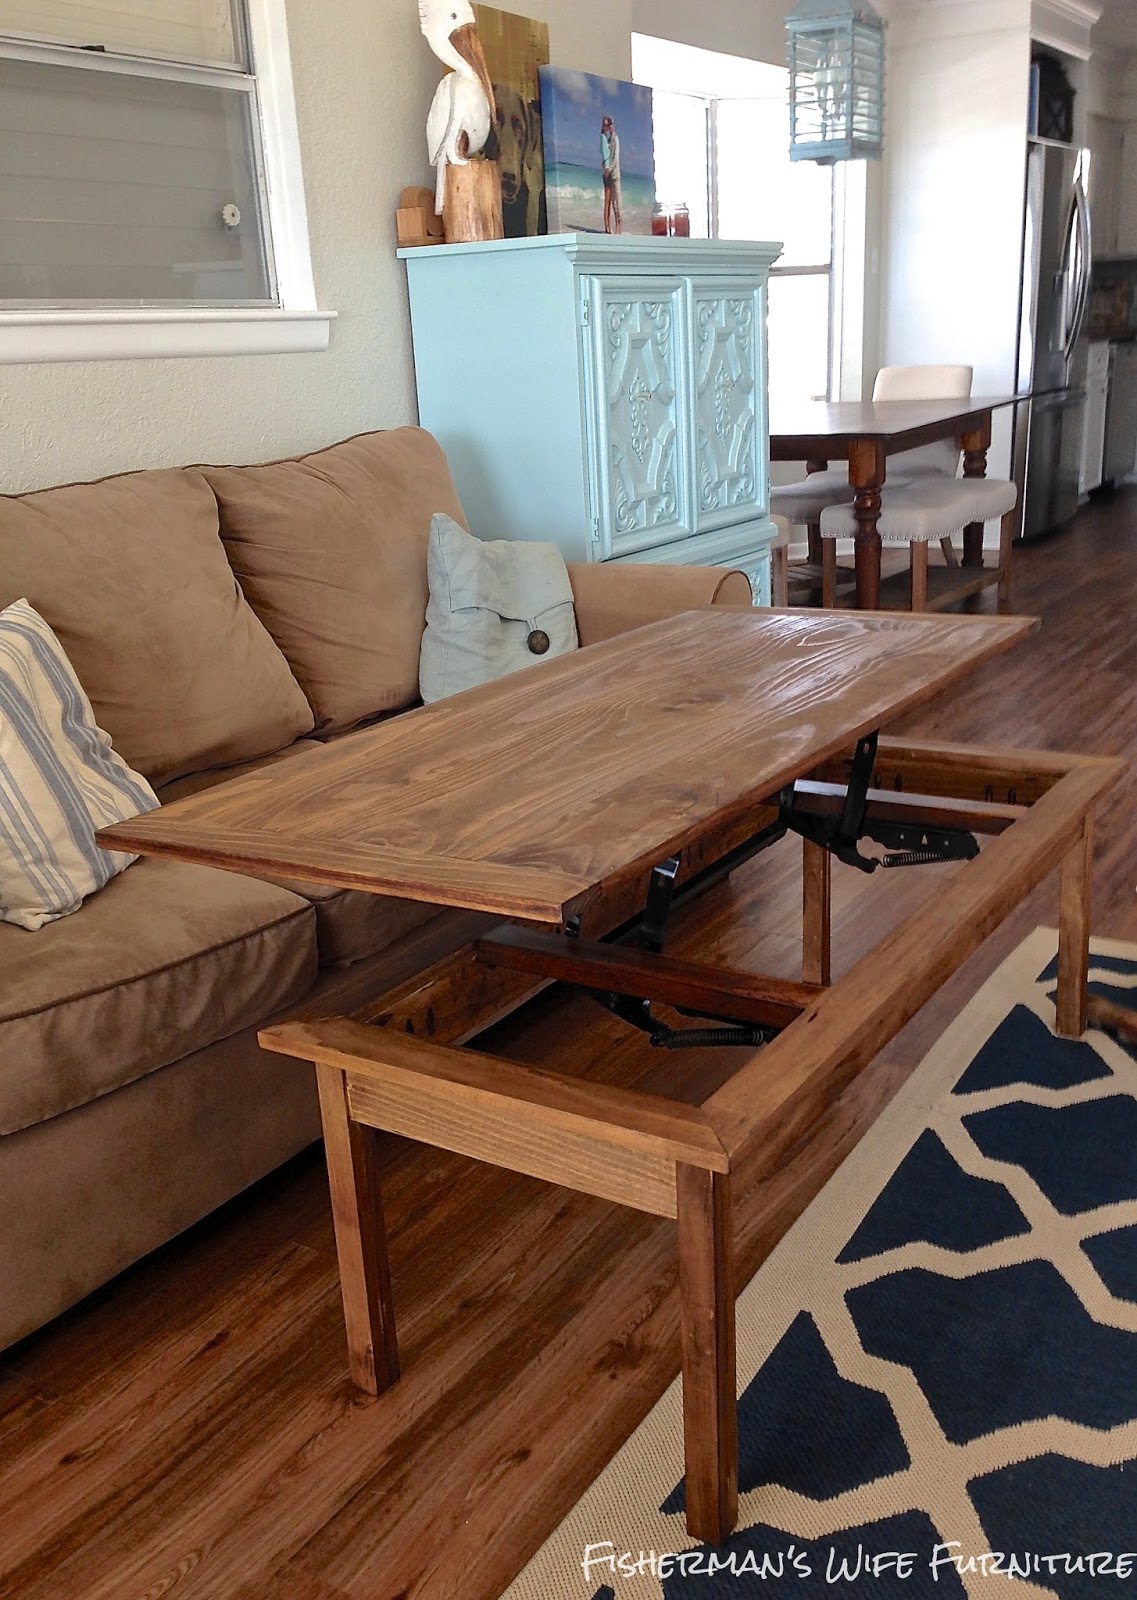 Fisherman's Wife Furniture: DIY Coffee Table